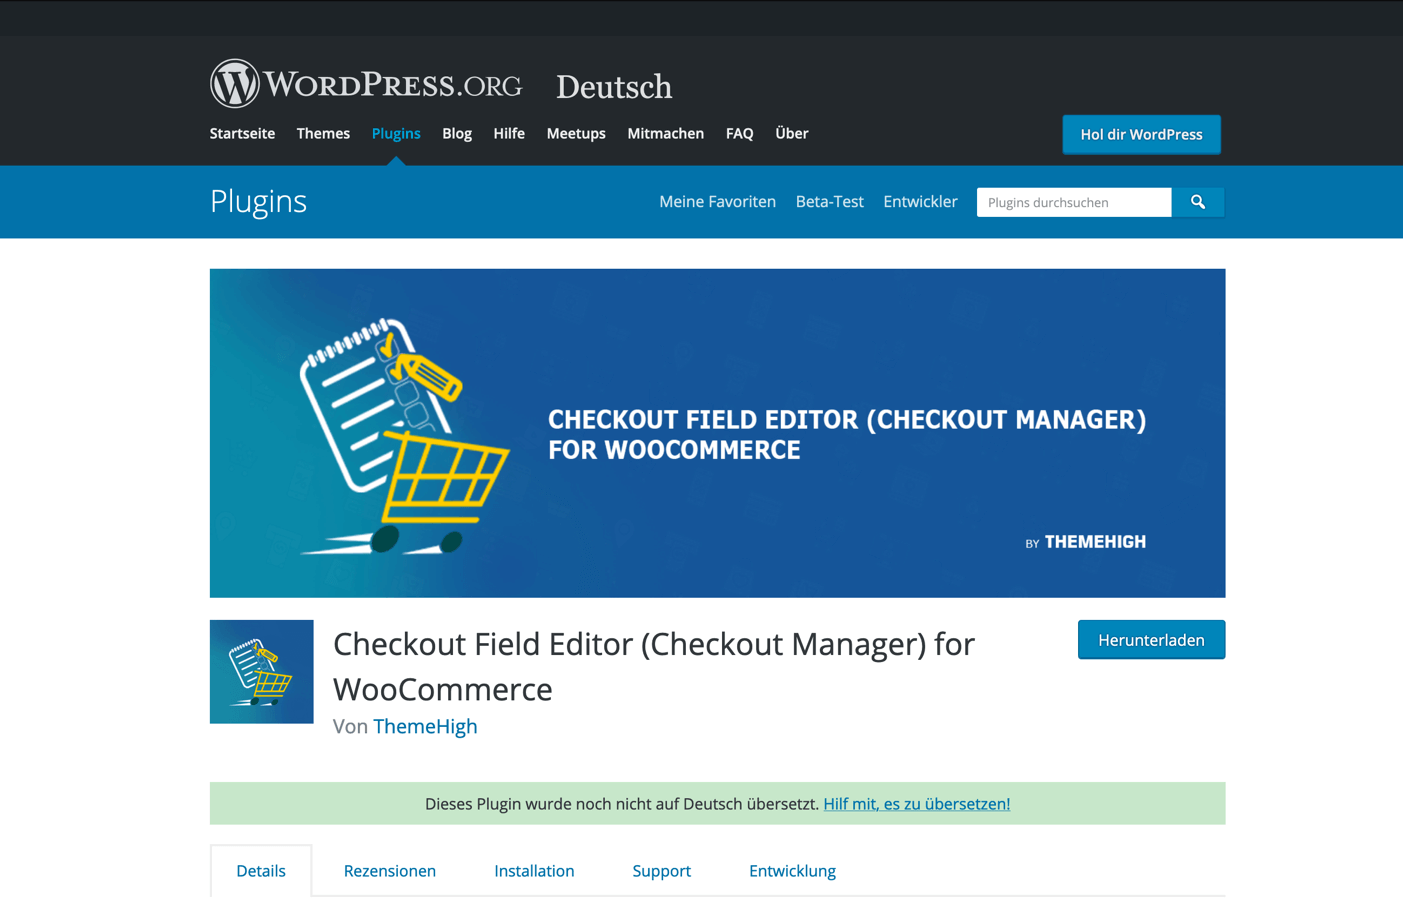 Checkout Field Editor für WooCommerce auf WordPress.org